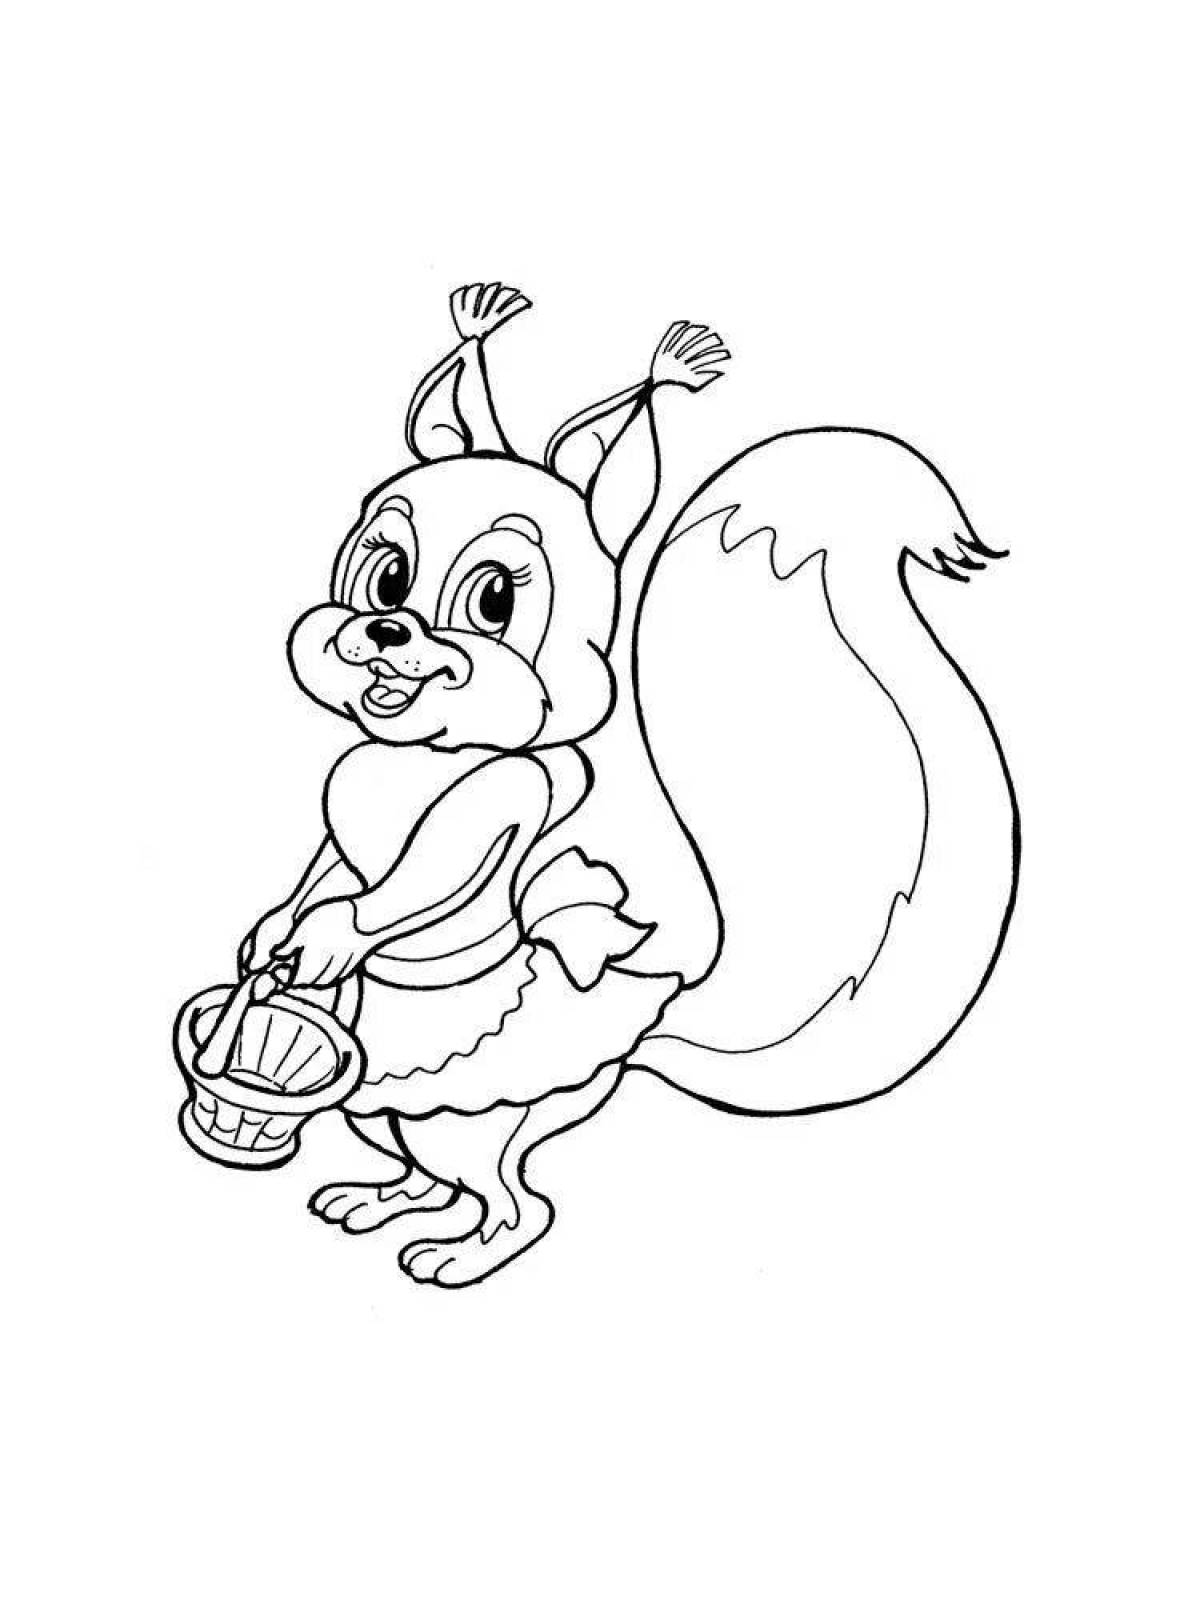 Bright squirrel coloring page